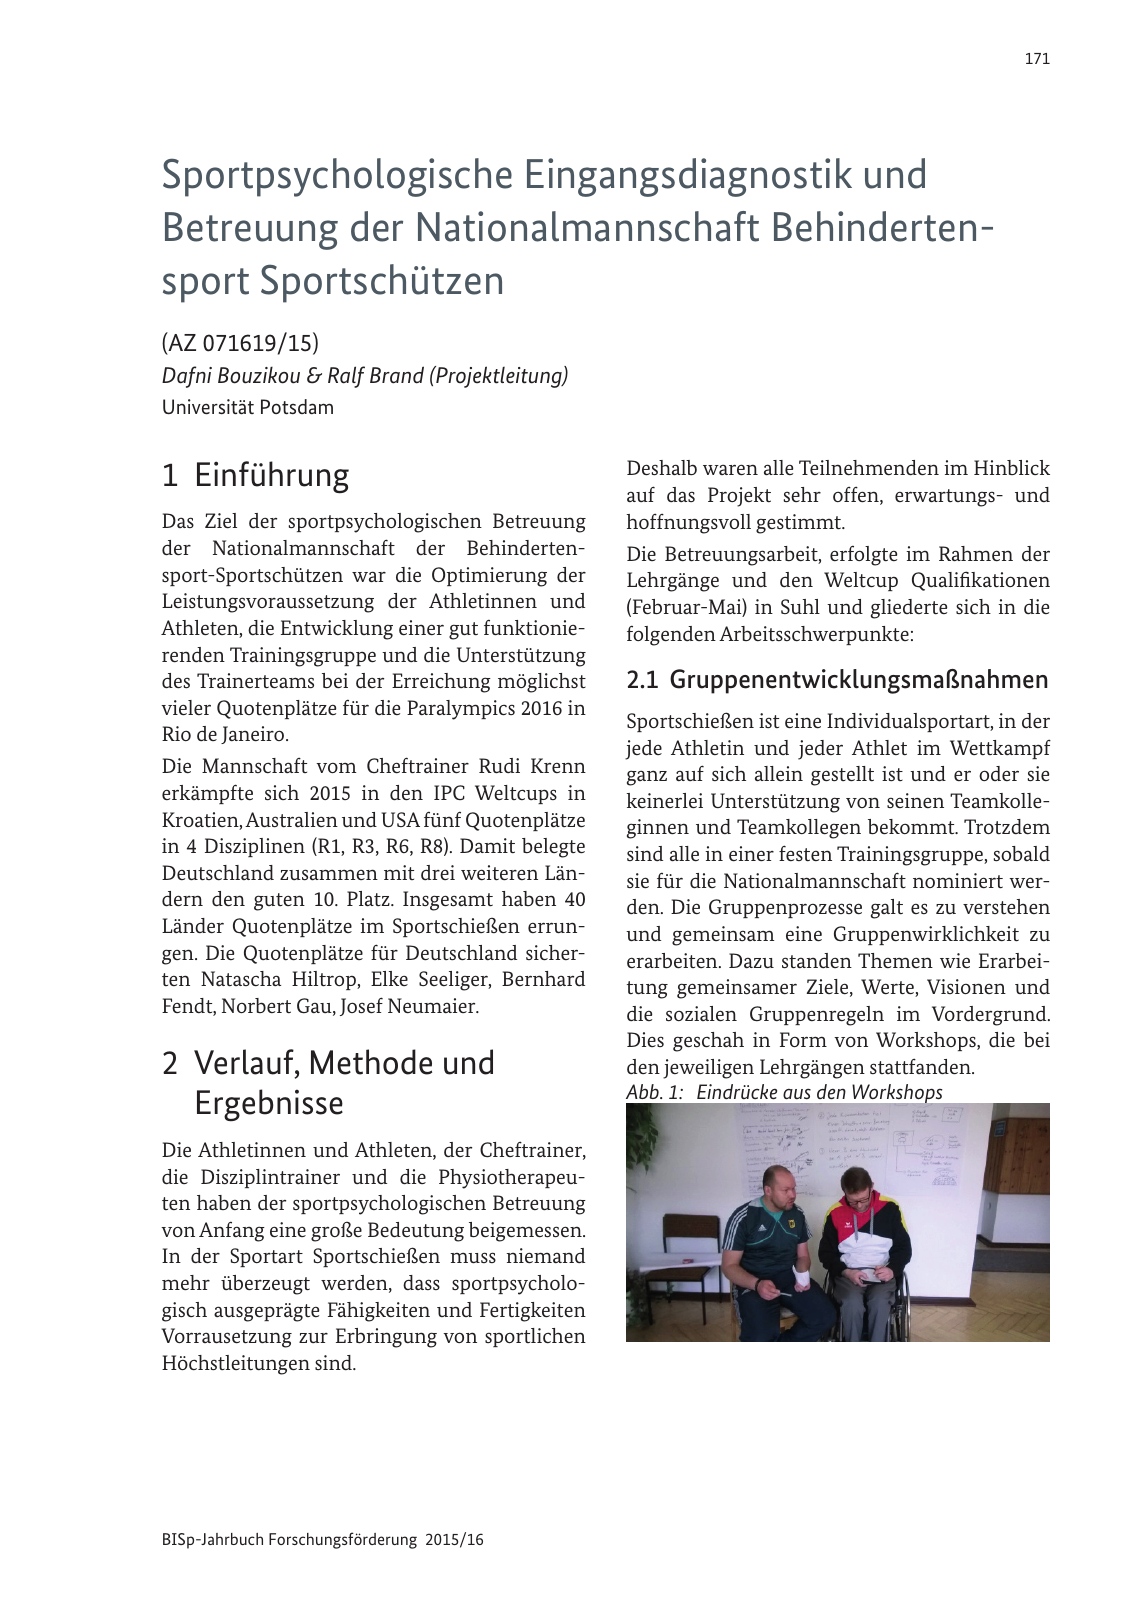 Vorschau BISp-Jahrbuch Forschungsförderung 2015/16 Seite 173